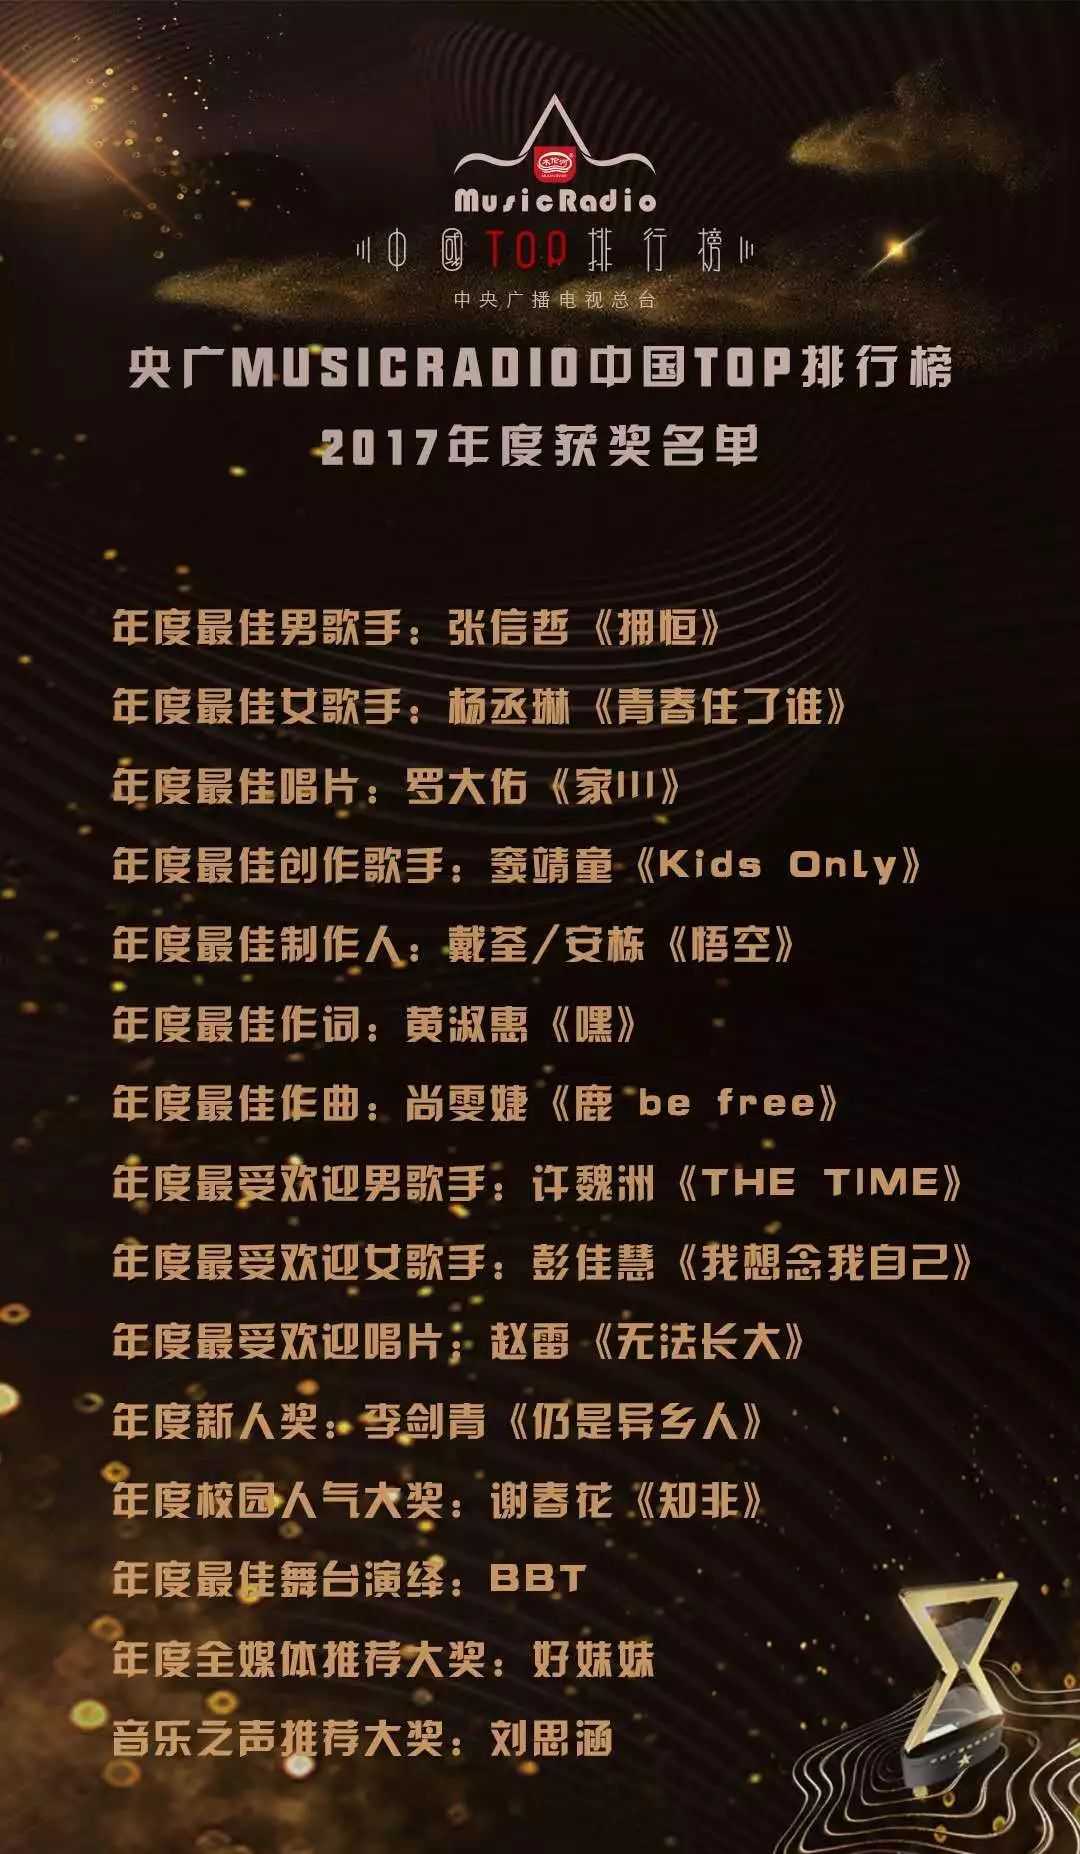 央广MusicRadio音乐之声 “木伦河冰淇淋”中国TOP排行榜 2017年度颁奖晚会盛大举行